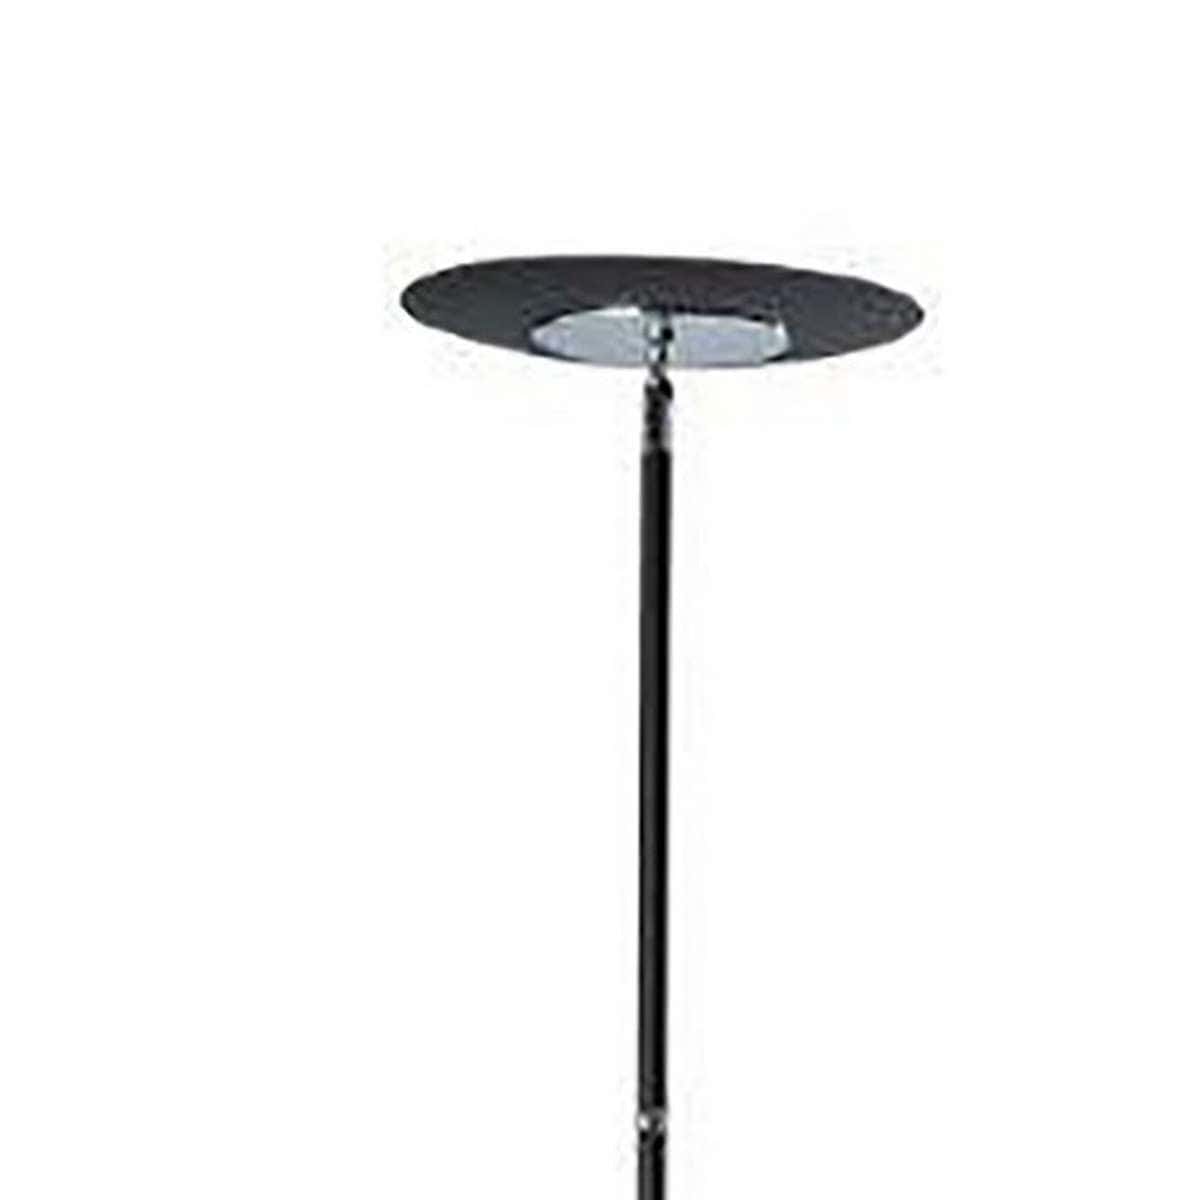 Benzara Floor Lamp With Adjustable Torchiere Head And Sleek Metal Body, Black By Benzara Floor Lamps BM240394